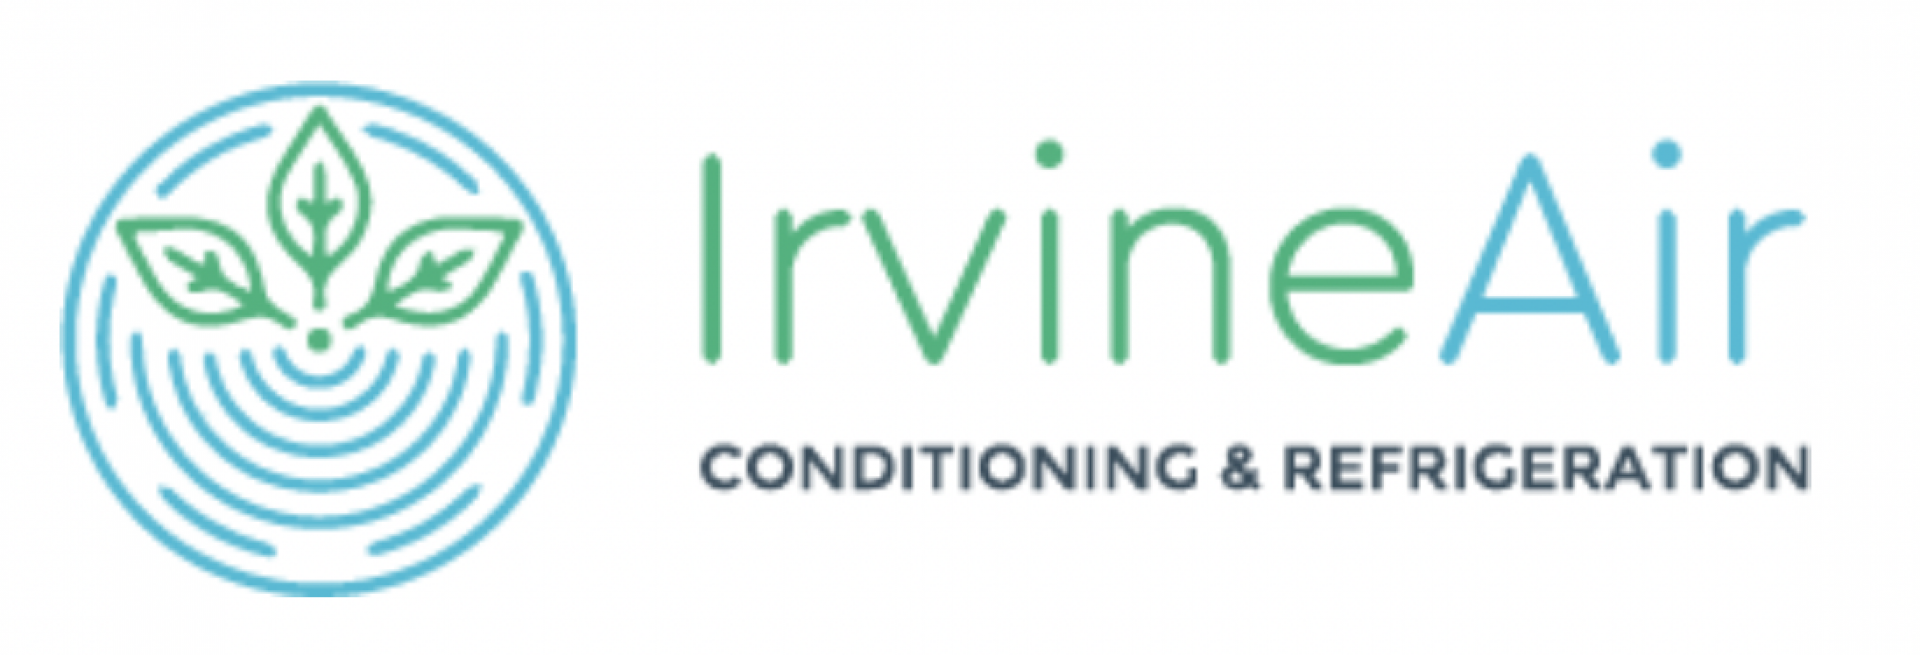 Irvine Air Conditioning & Refrigeration Inc company logo